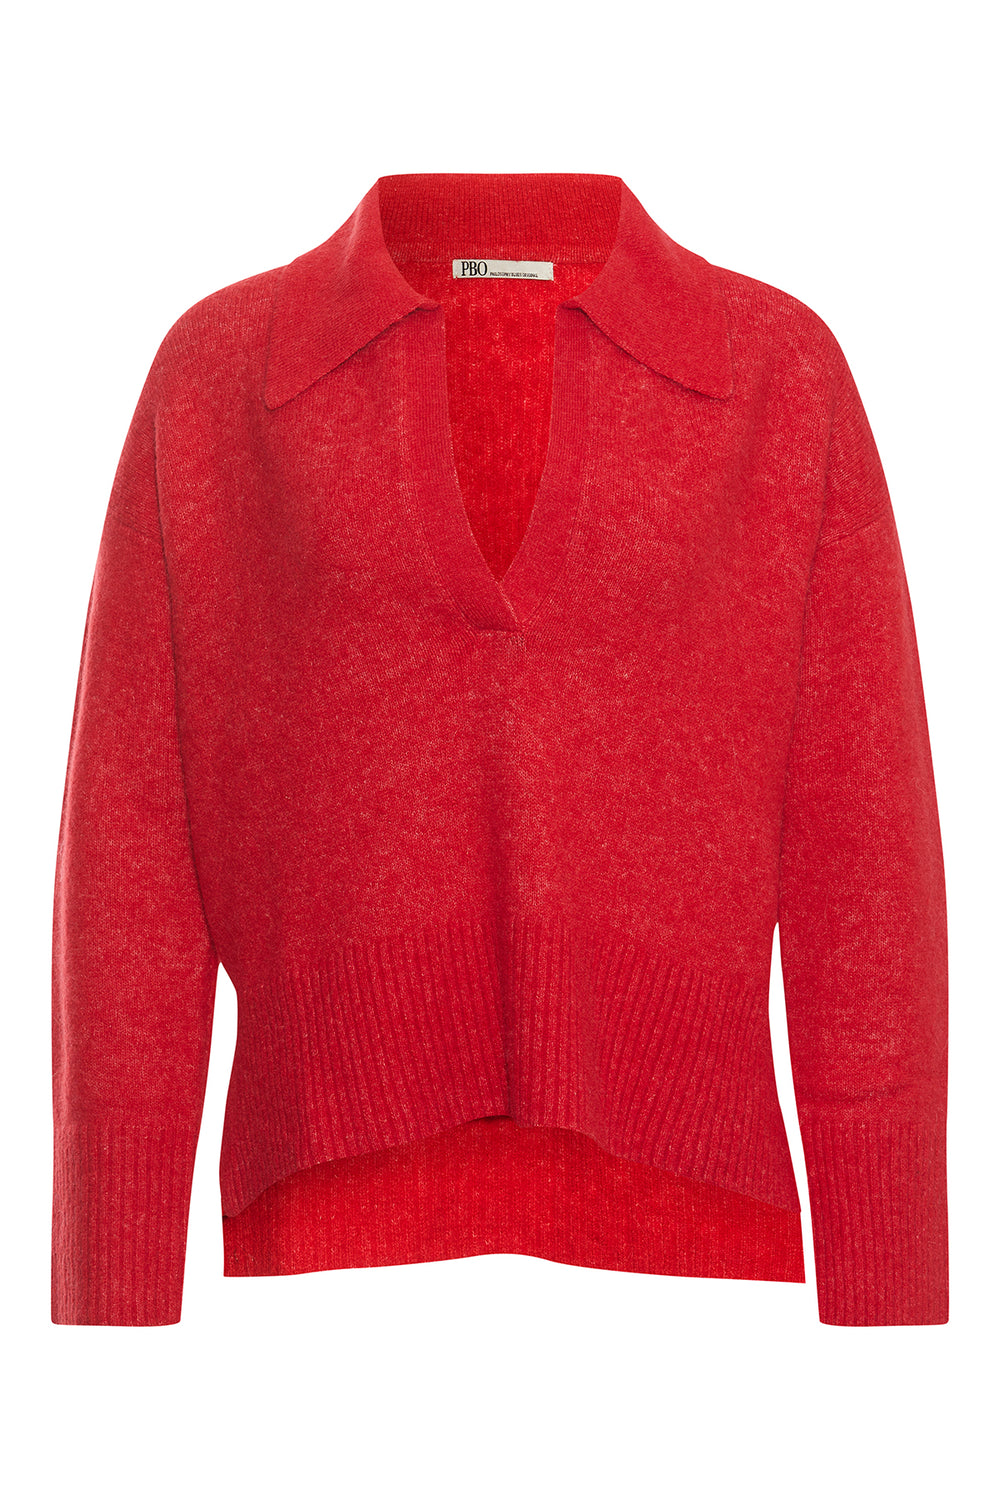 PBO Abile knit sweater KNITWEAR, HEAVY 310 Mars red